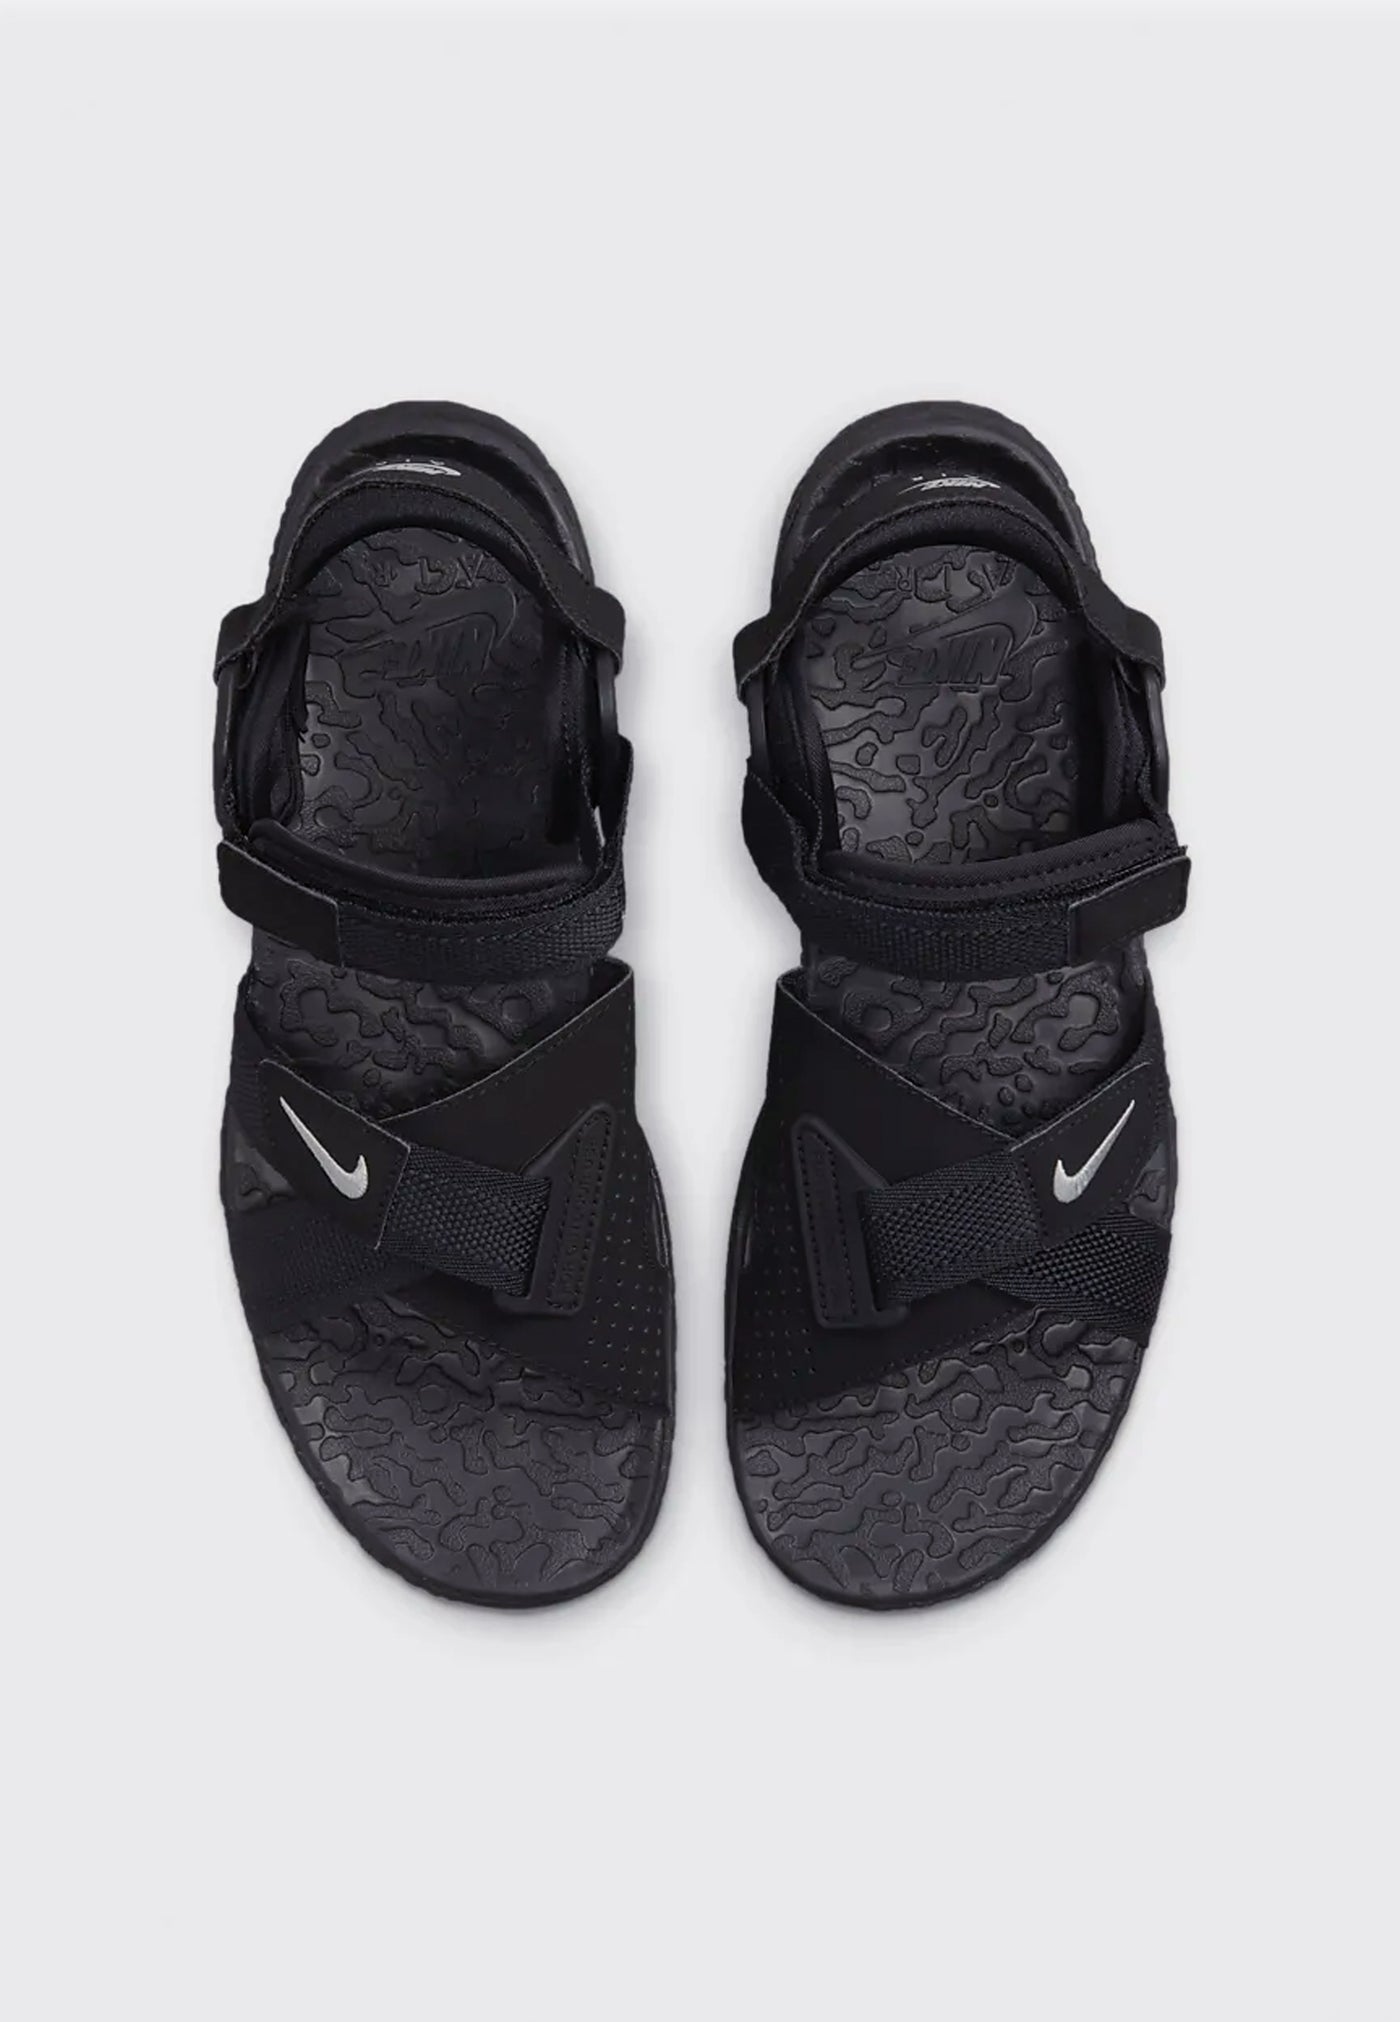 Nike Air Deschutz Sandal: Official Images & Release Info